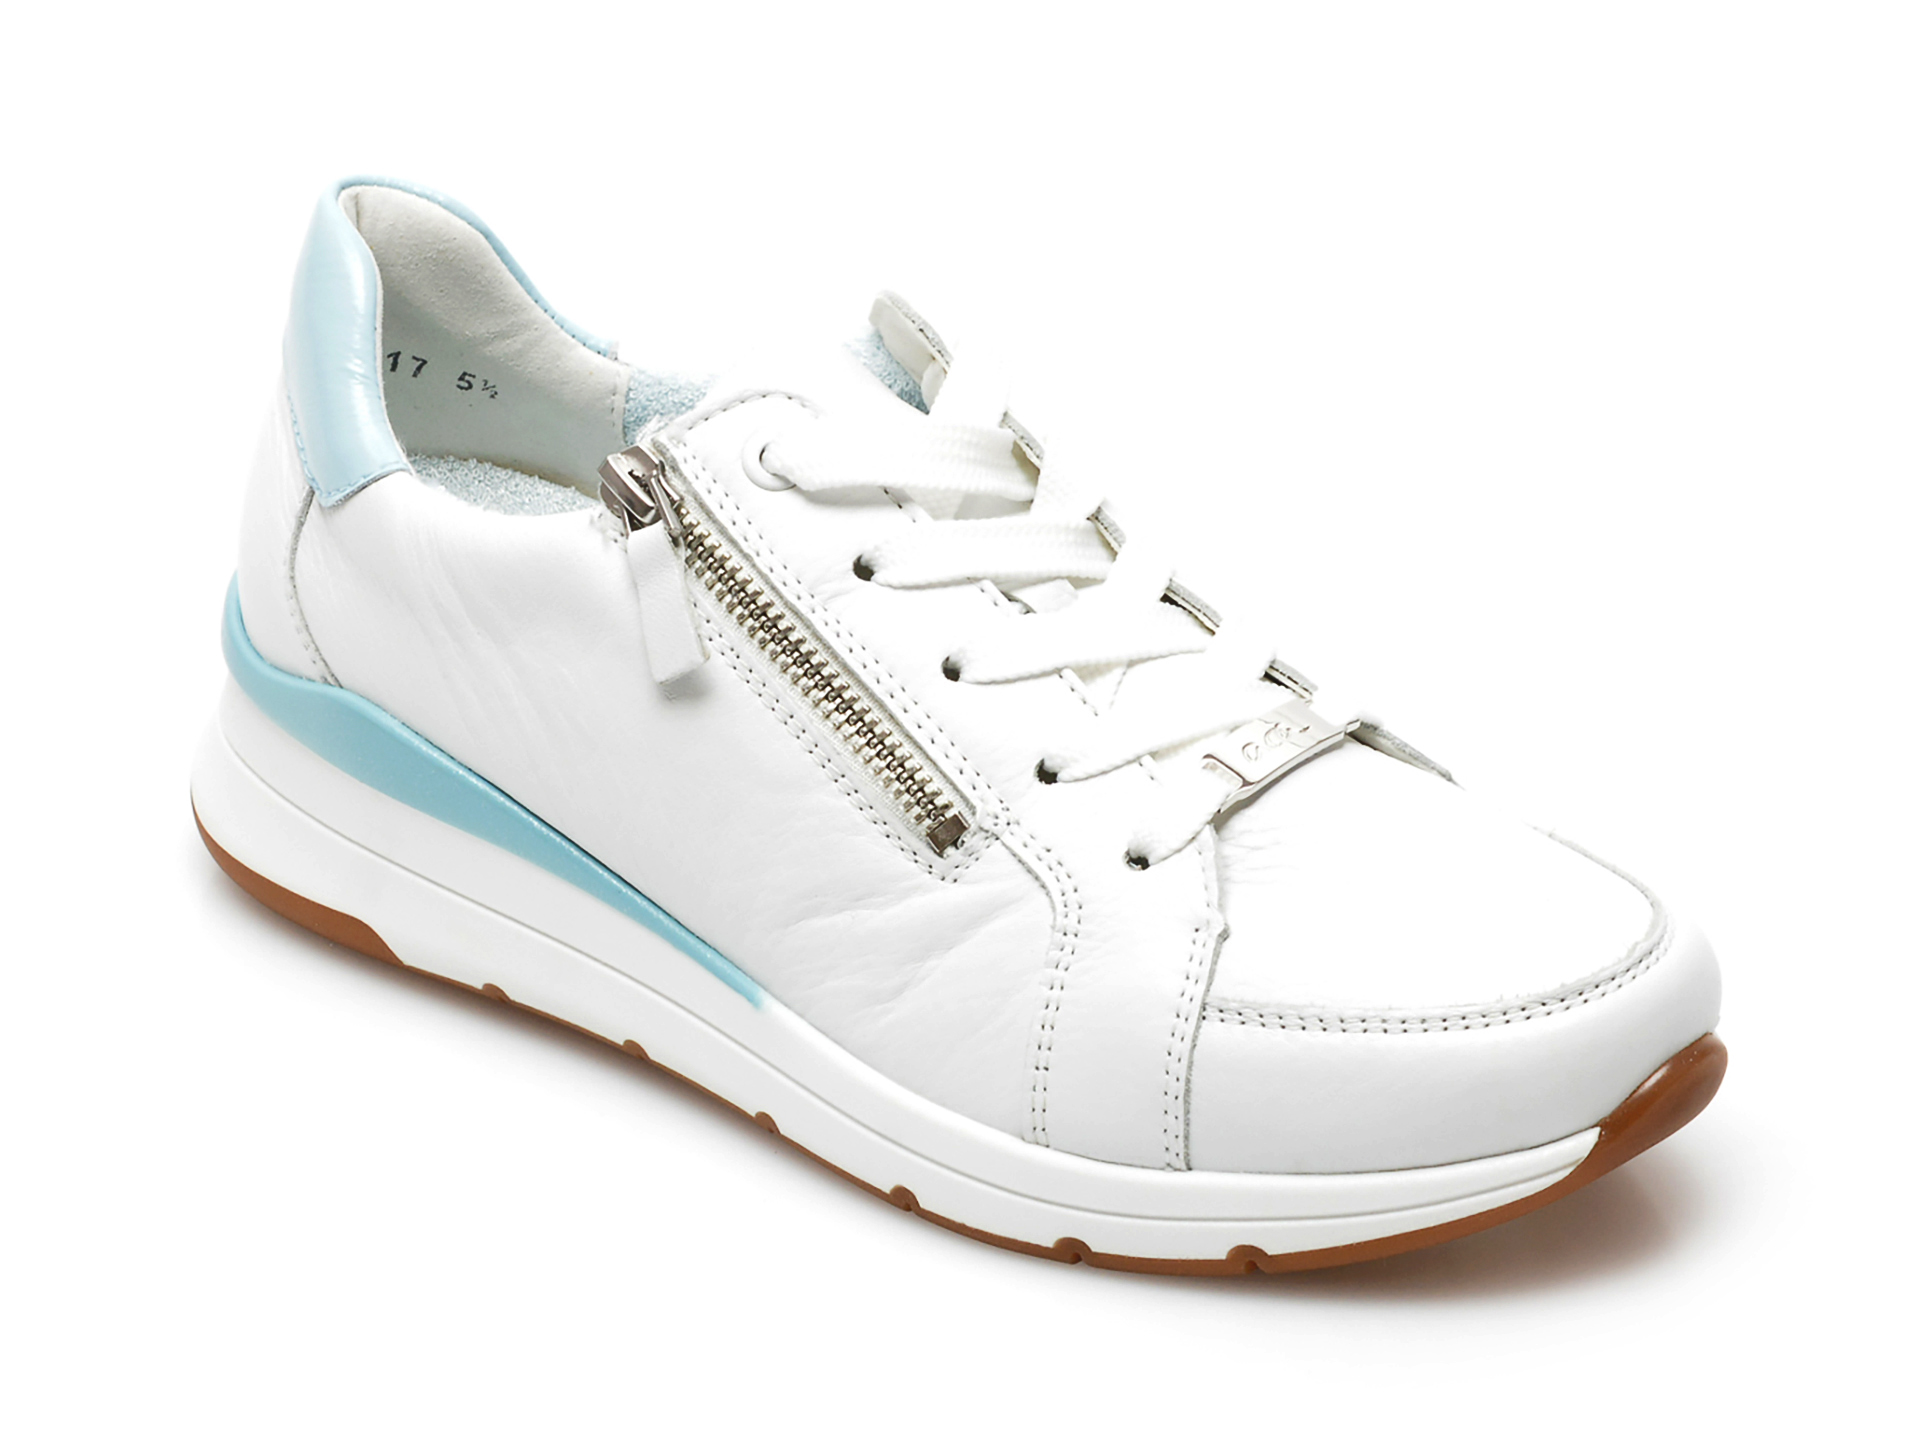 Pantofi sport ARA albi, 37717, din piele naturala 2022 ❤️ Pret Super otter.ro imagine noua 2022